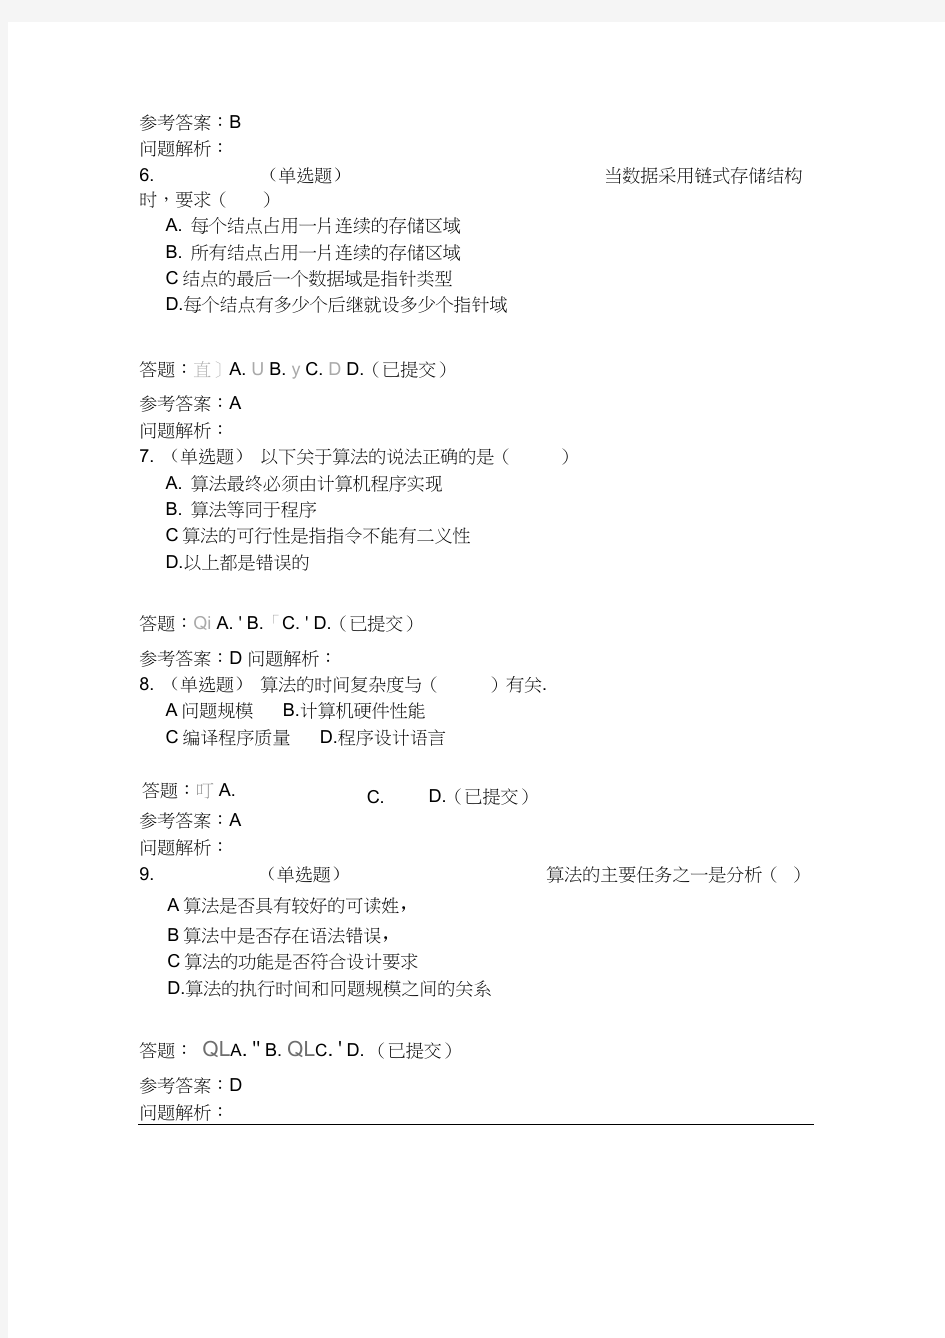 数据结构(含课程设计)_随堂练习2019春华南理工大学网络教育答案